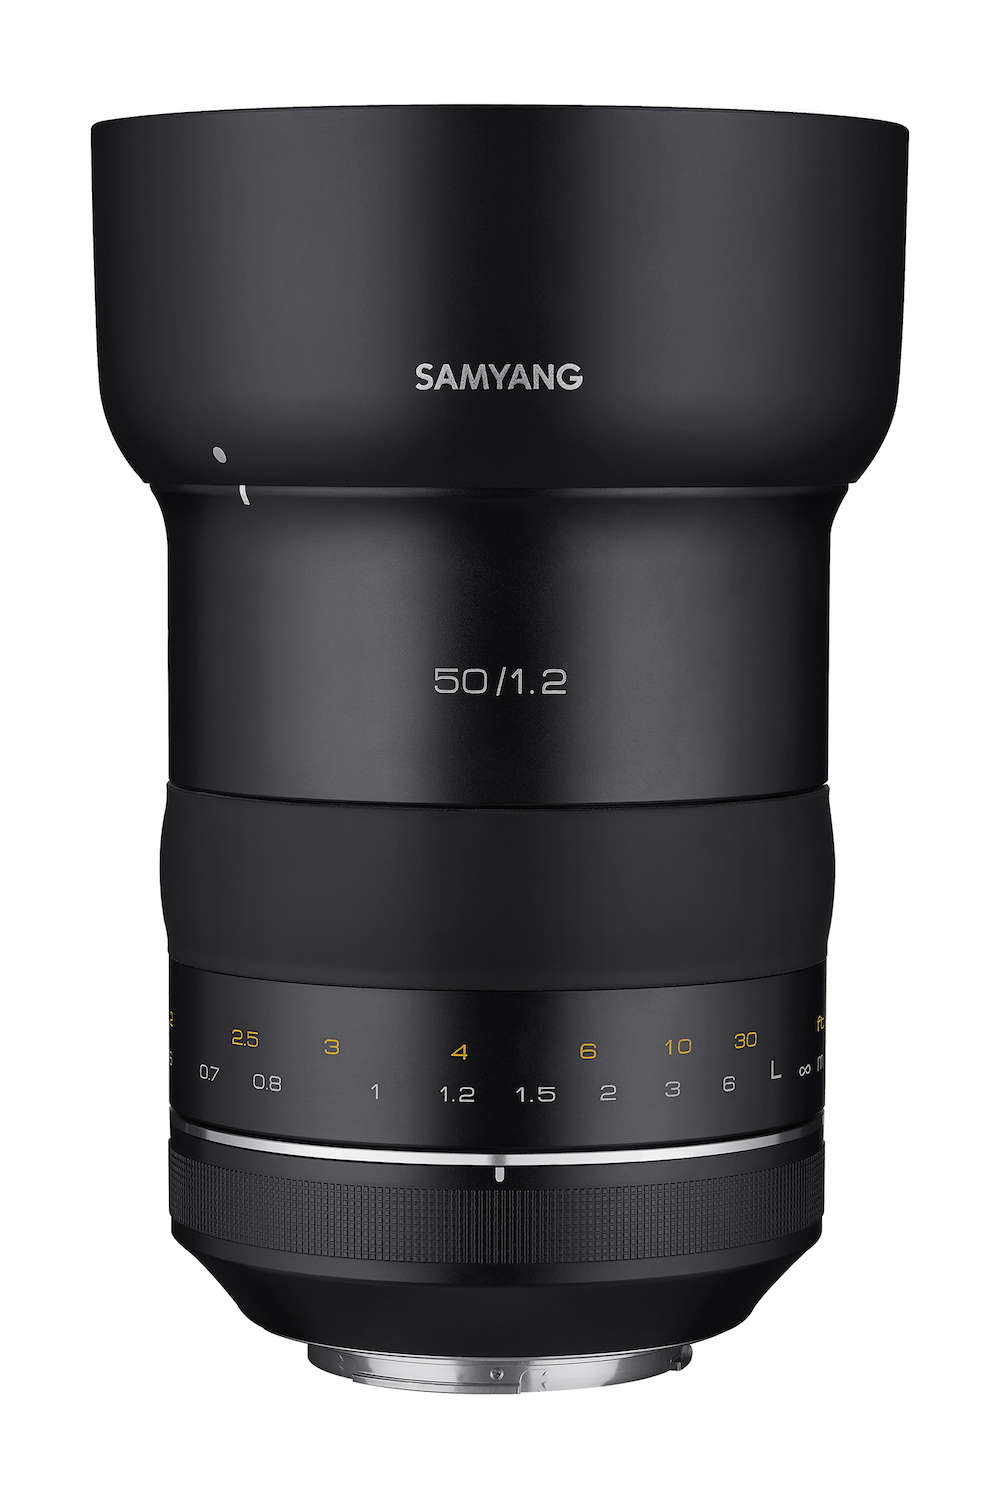 Samyang XP 50mm F1.2 Lens Announced for Full Frame Canon DSLRs